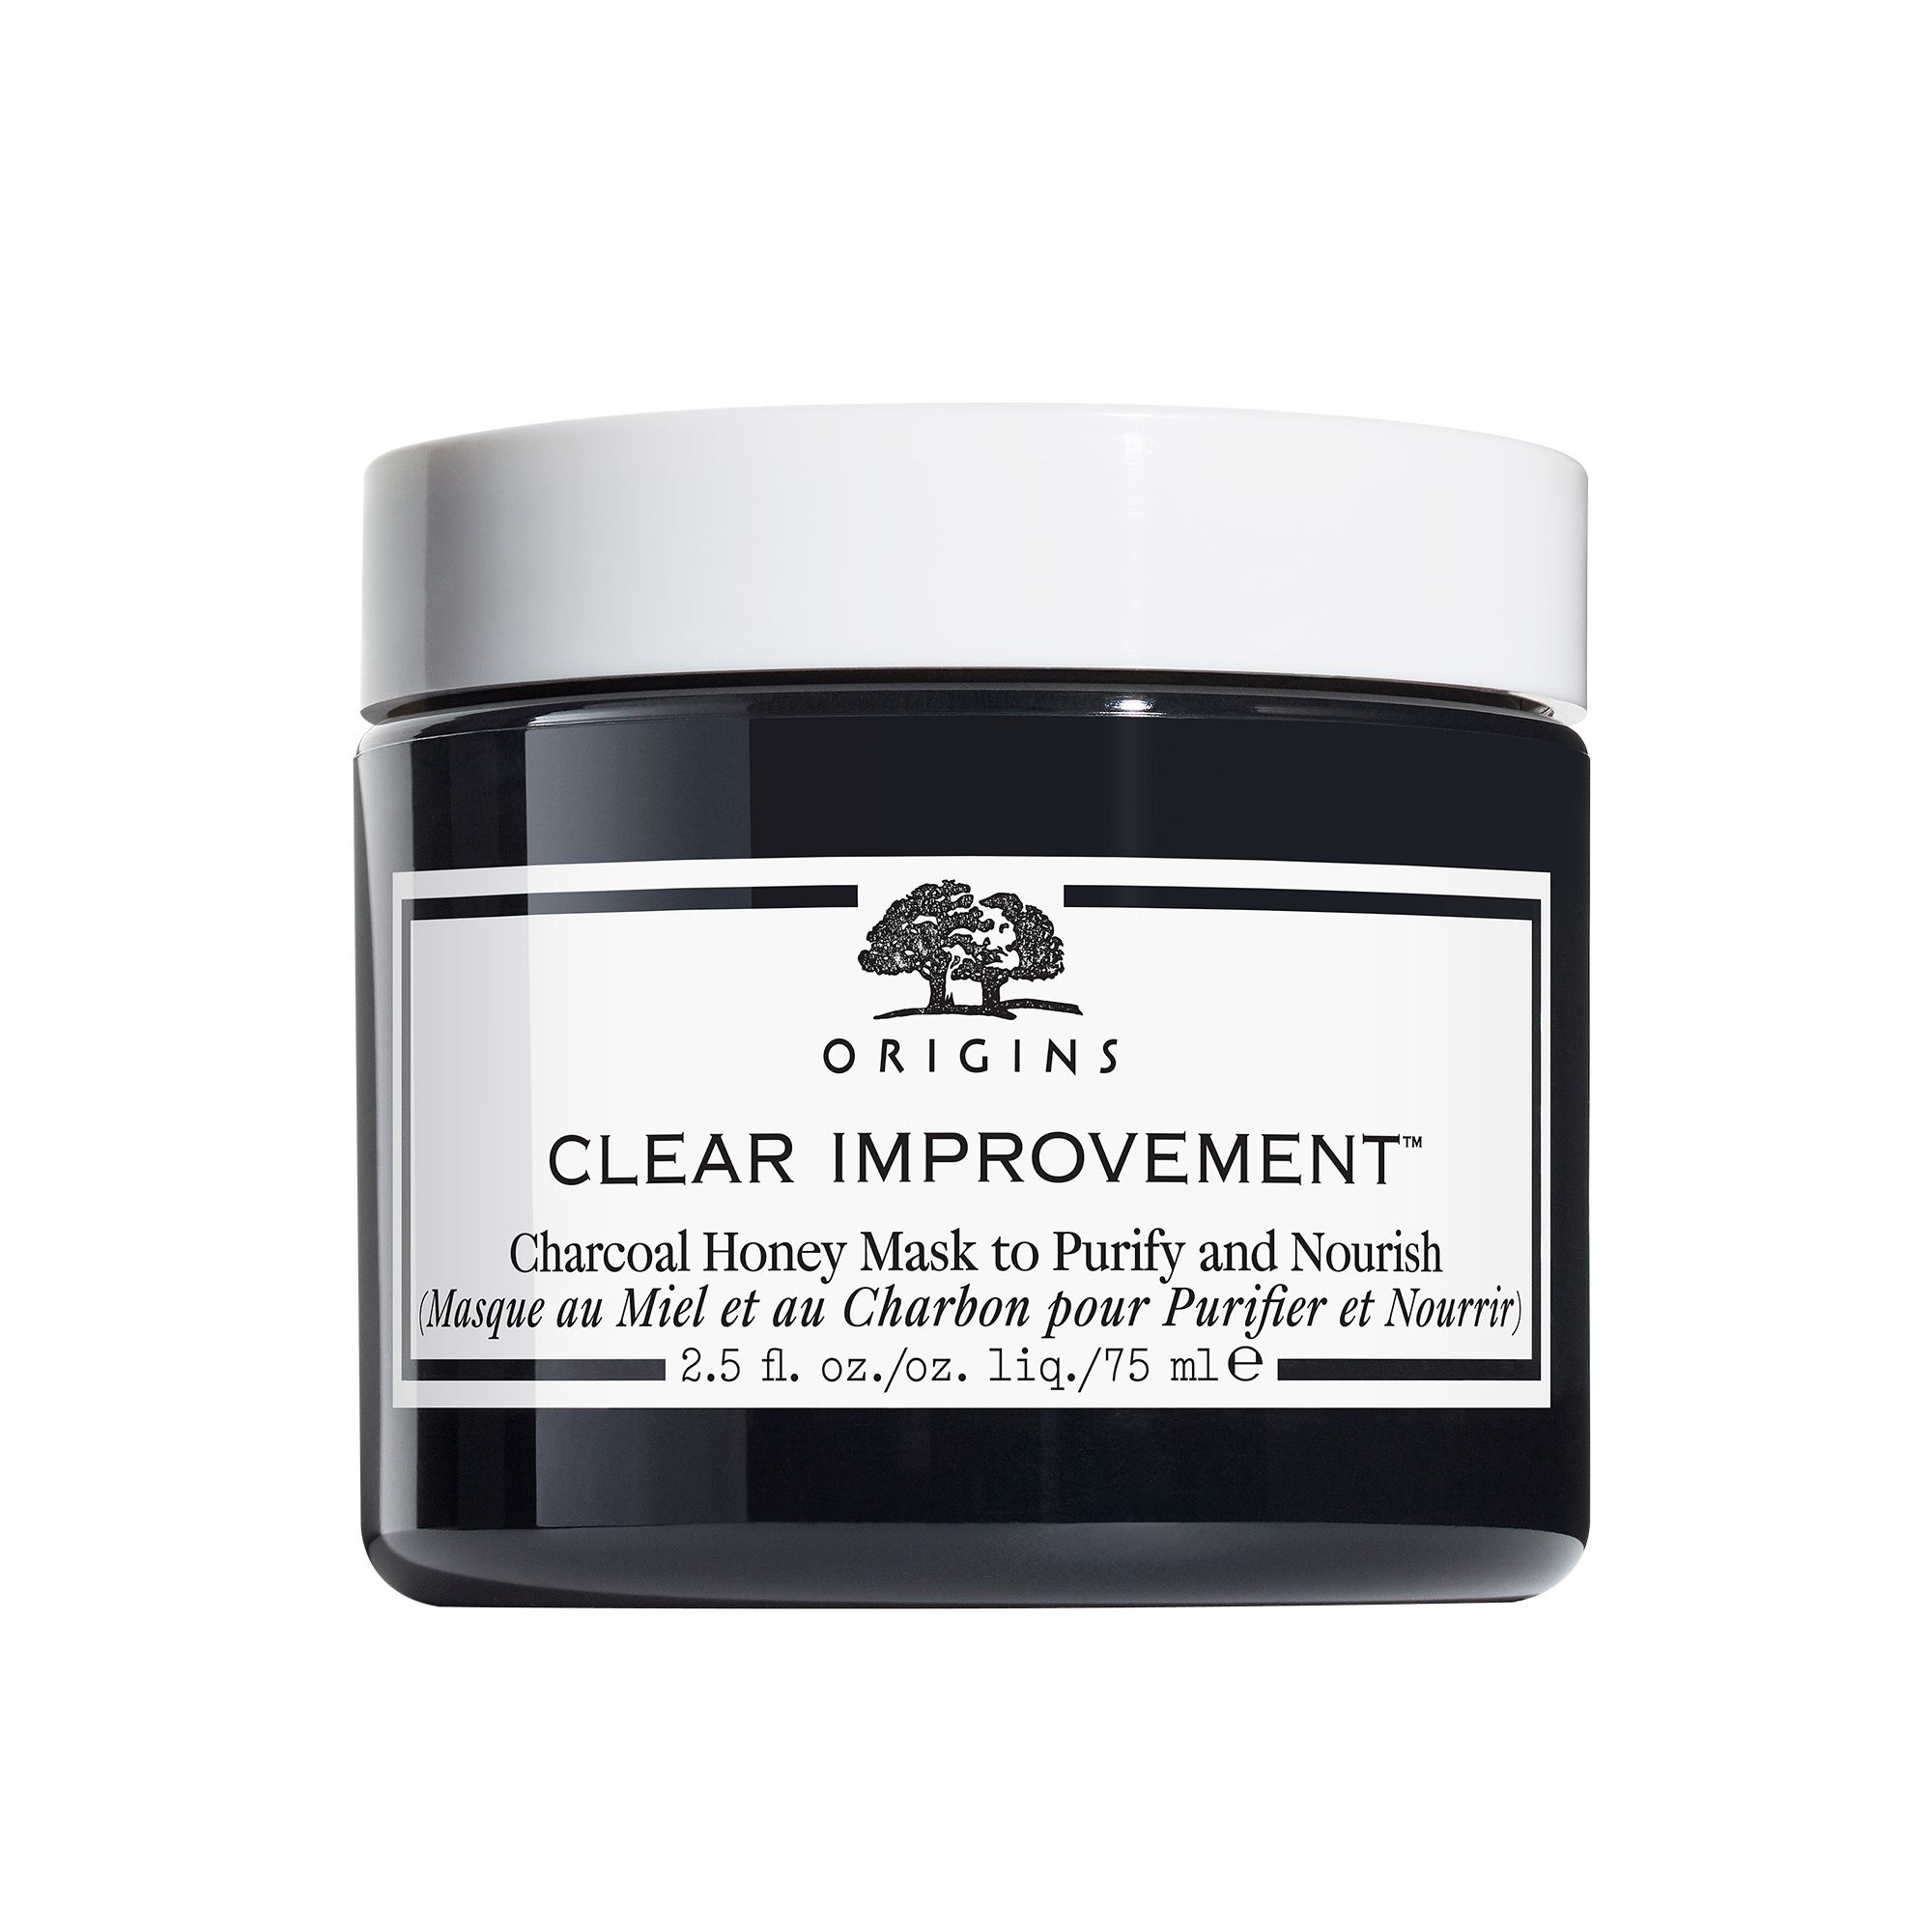 Origins Clear Improvement™ Charcoal Honey Mask to Purify and Nourish Reinigende und Pflegende Gesichtsmaske